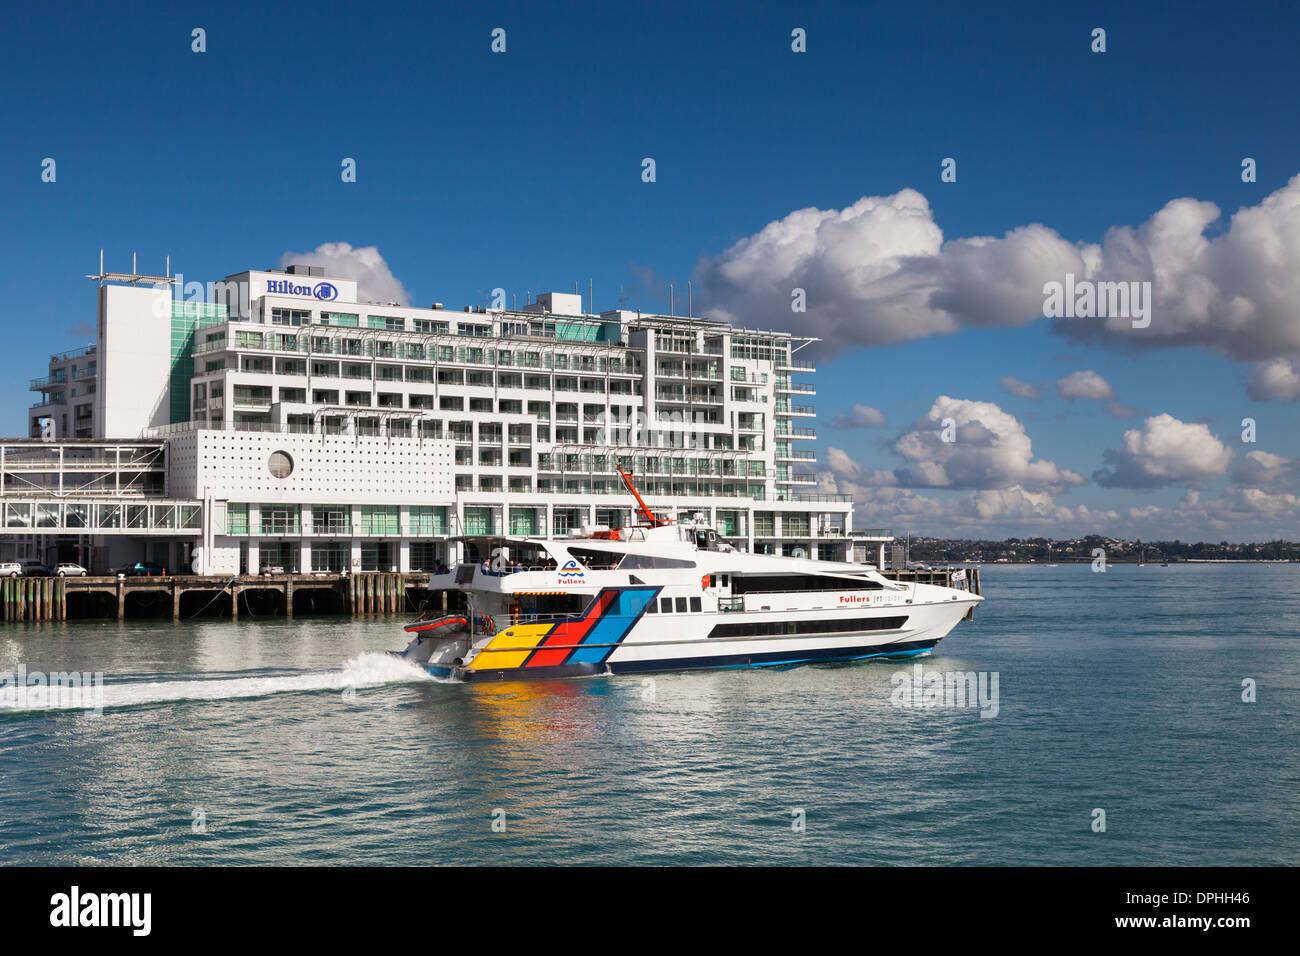 Gualchiere traghetto passando Hilton Hotel di Auckland, Nuova Zelanda Foto Stock